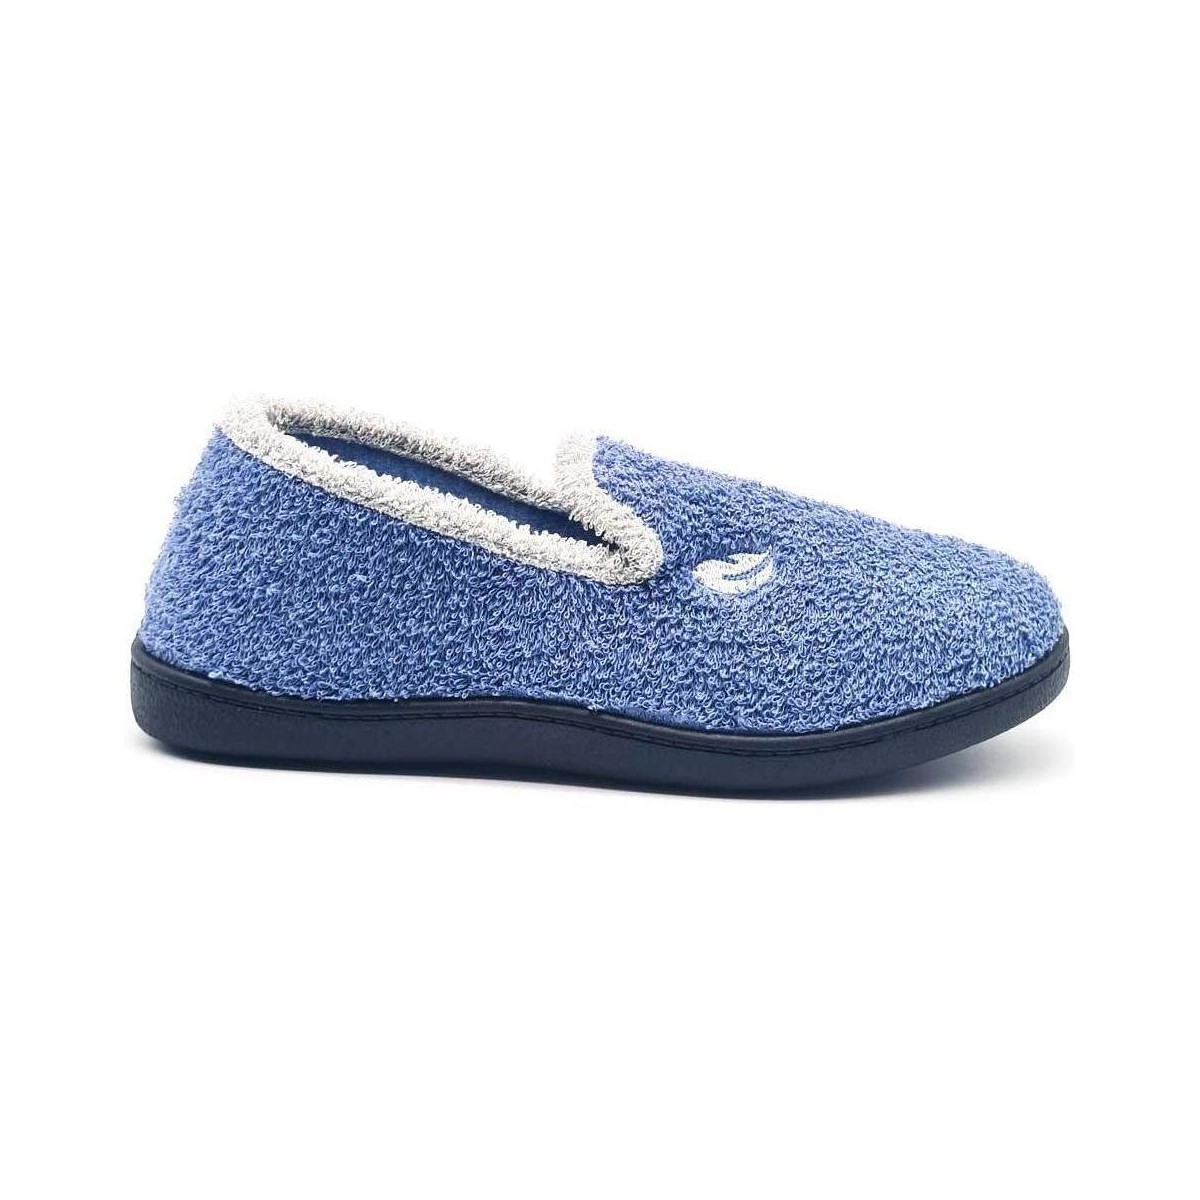 Zapatos Mujer Zapatillas bajas Roal 12303 Azul